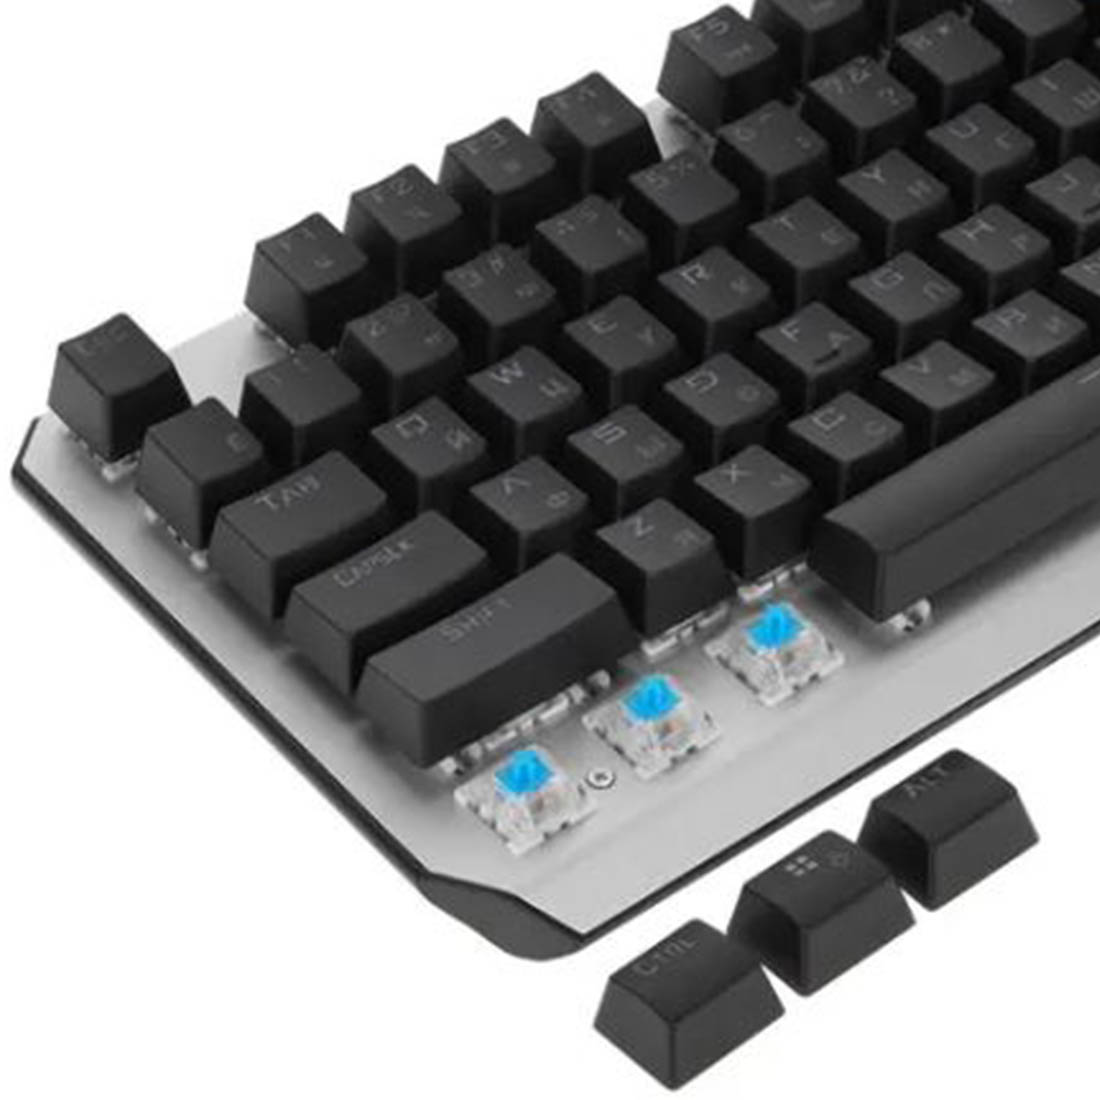 Игровая клавиатура AULA F2067, механическая, проводная, подсветка, цвет черно серый